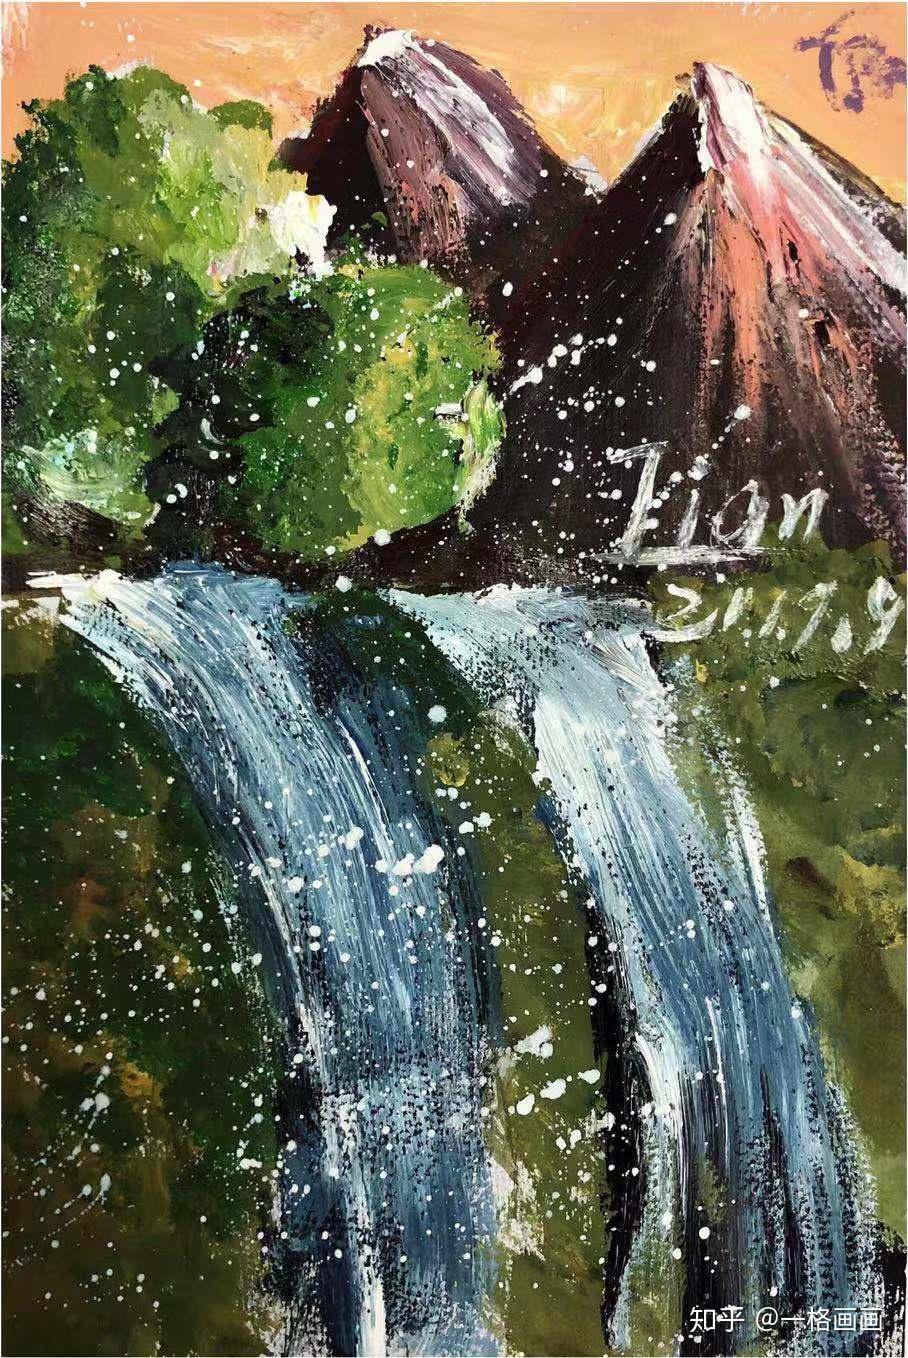 一格画画少儿美术教育学院李沐恬小学员水粉绘画作品《瀑布》